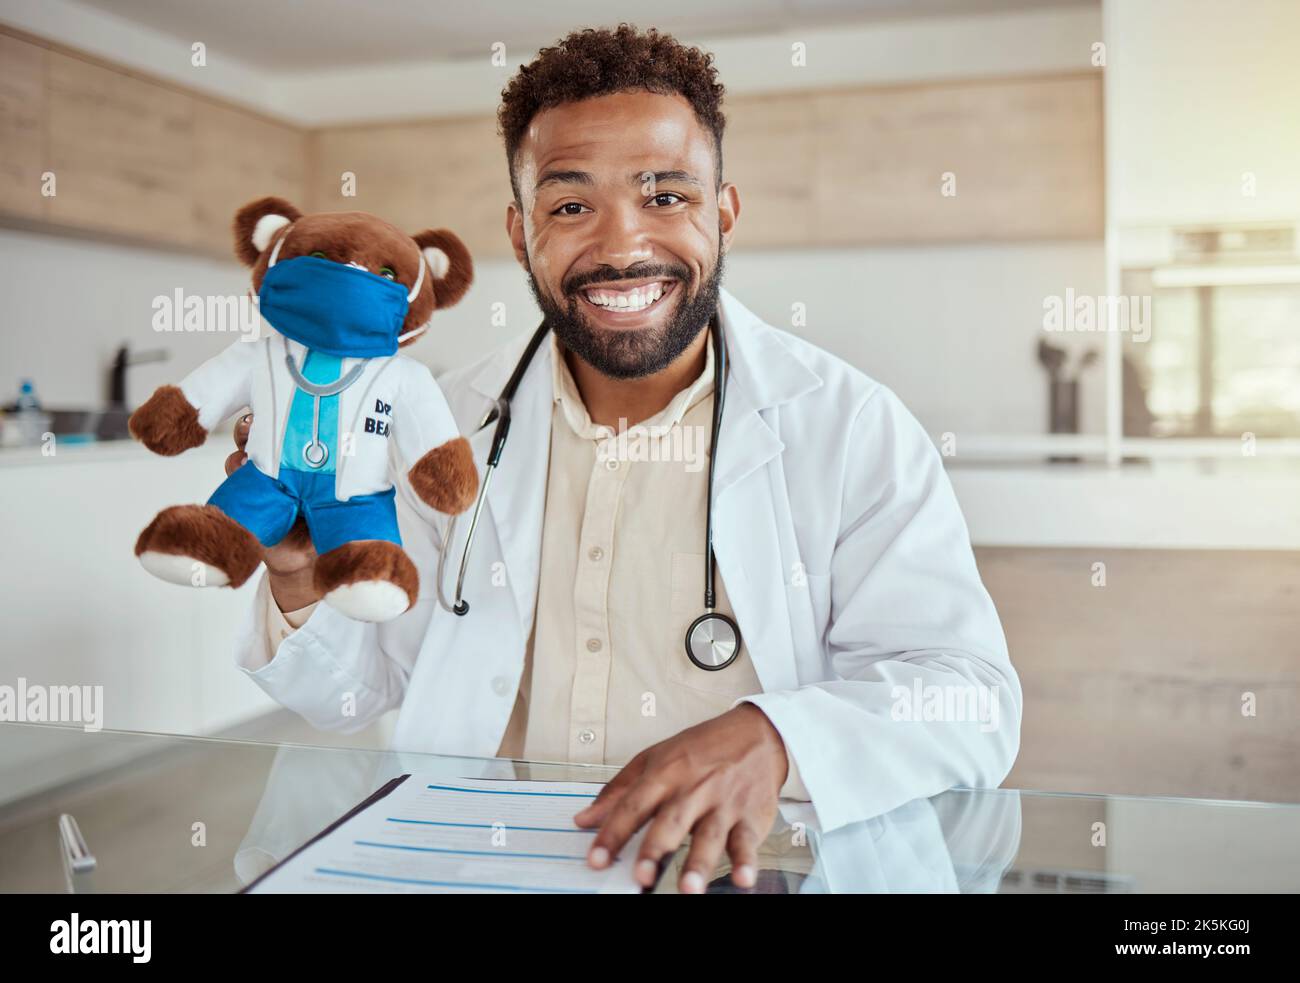 Medico infantile, pediatra e assistenza sanitaria lavorano tenendo un giocattolo orsacchiotto e guardando felice e amichevole mentre si siede nel suo ufficio in un ospedale Foto Stock